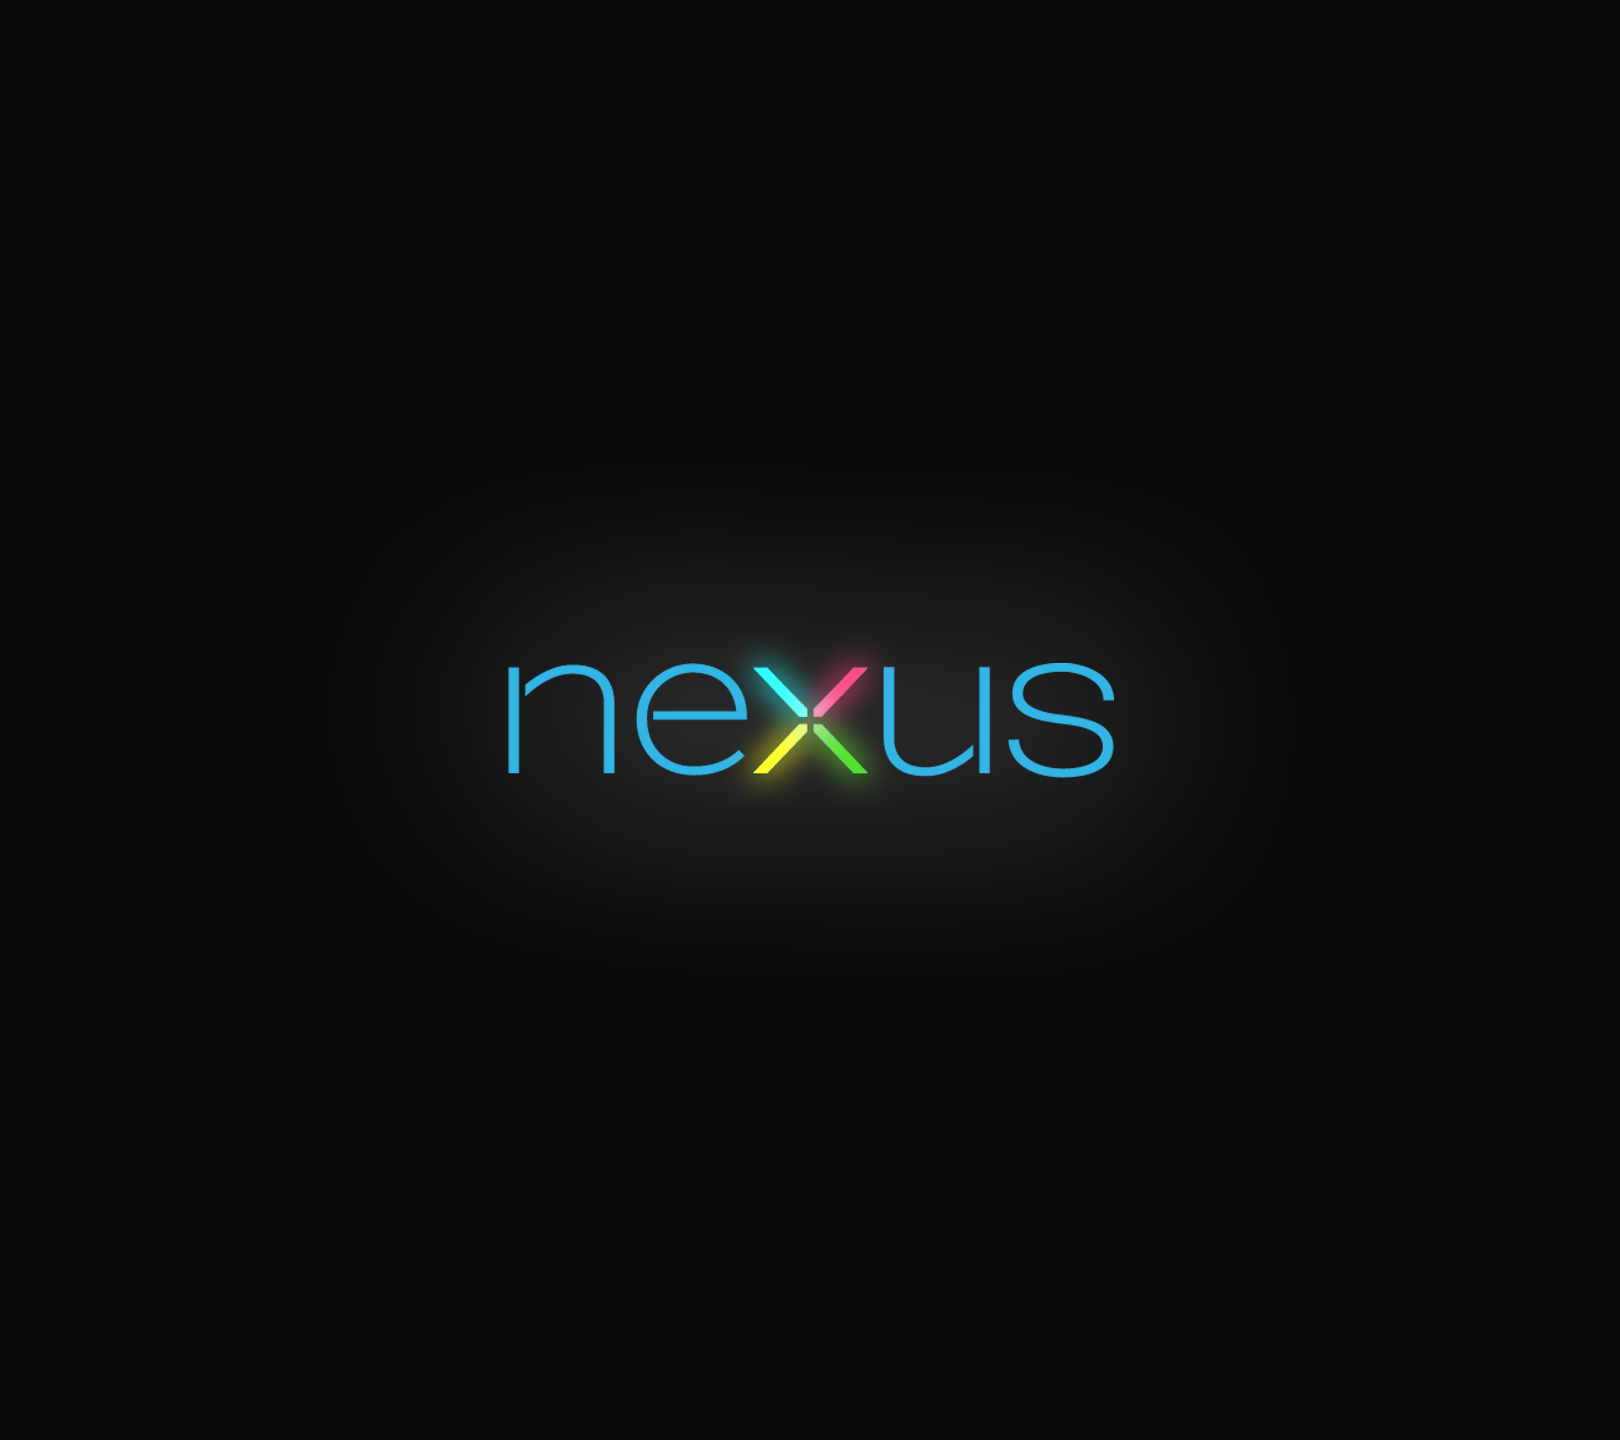 Nexus Wallpaper 14 - Best Wallpaper Collection